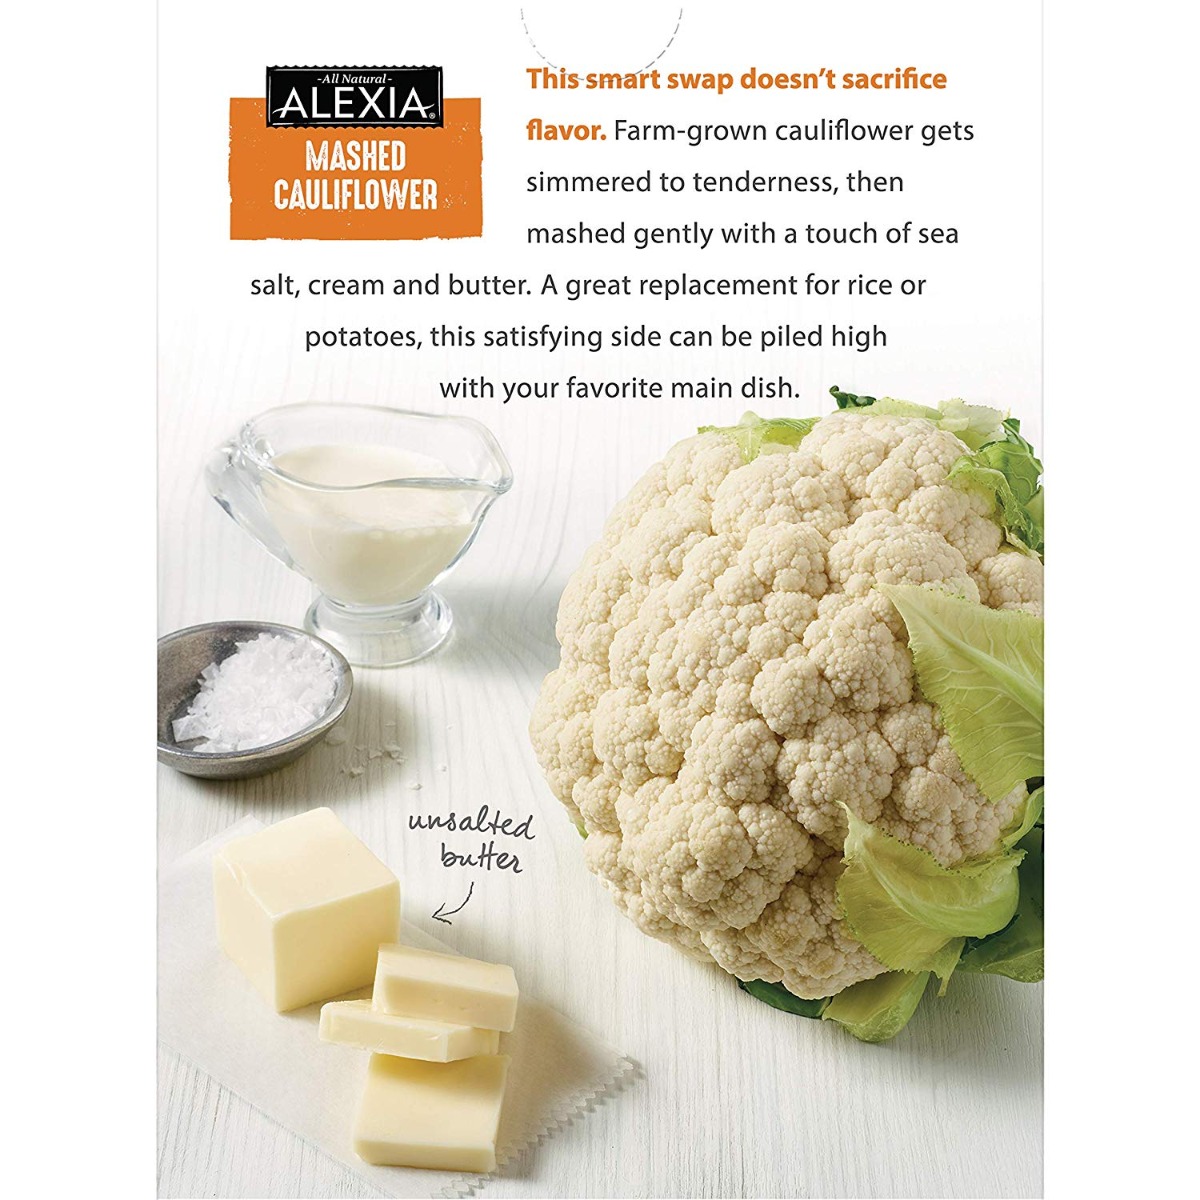 Mashed Cauliflower With Sea Salt, Cauliflower - 034183000045